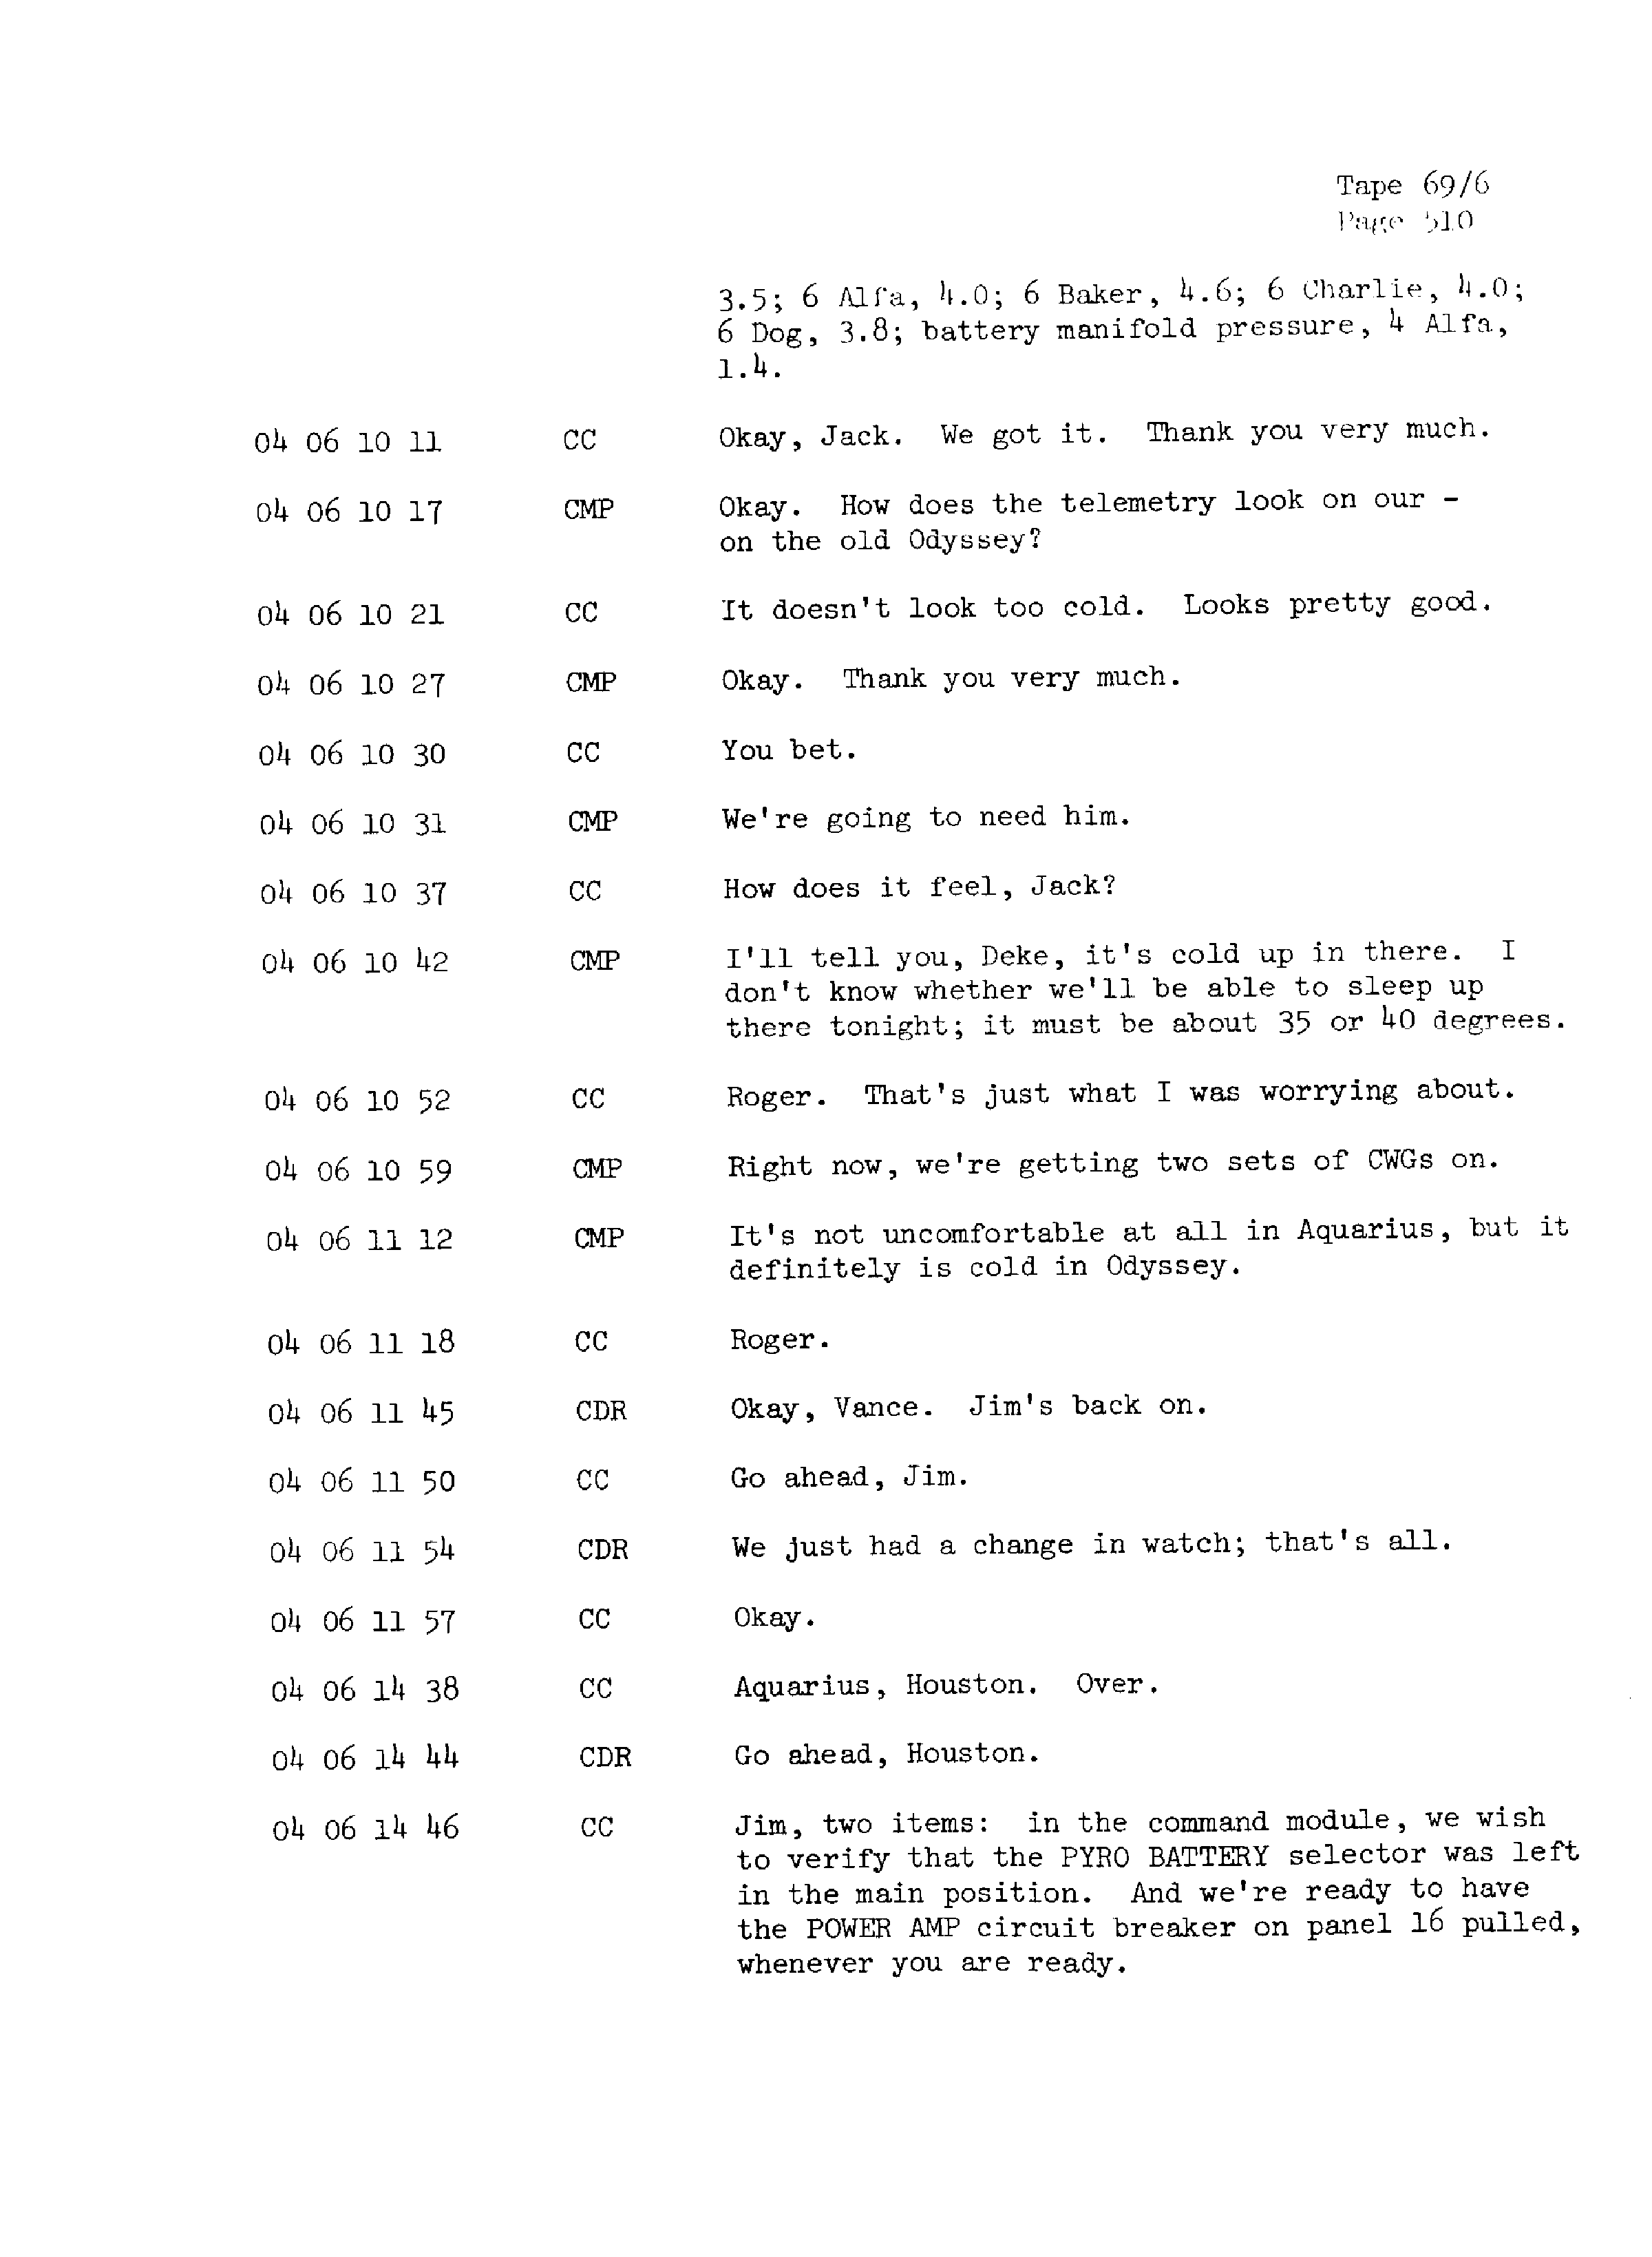 Page 517 of Apollo 13’s original transcript